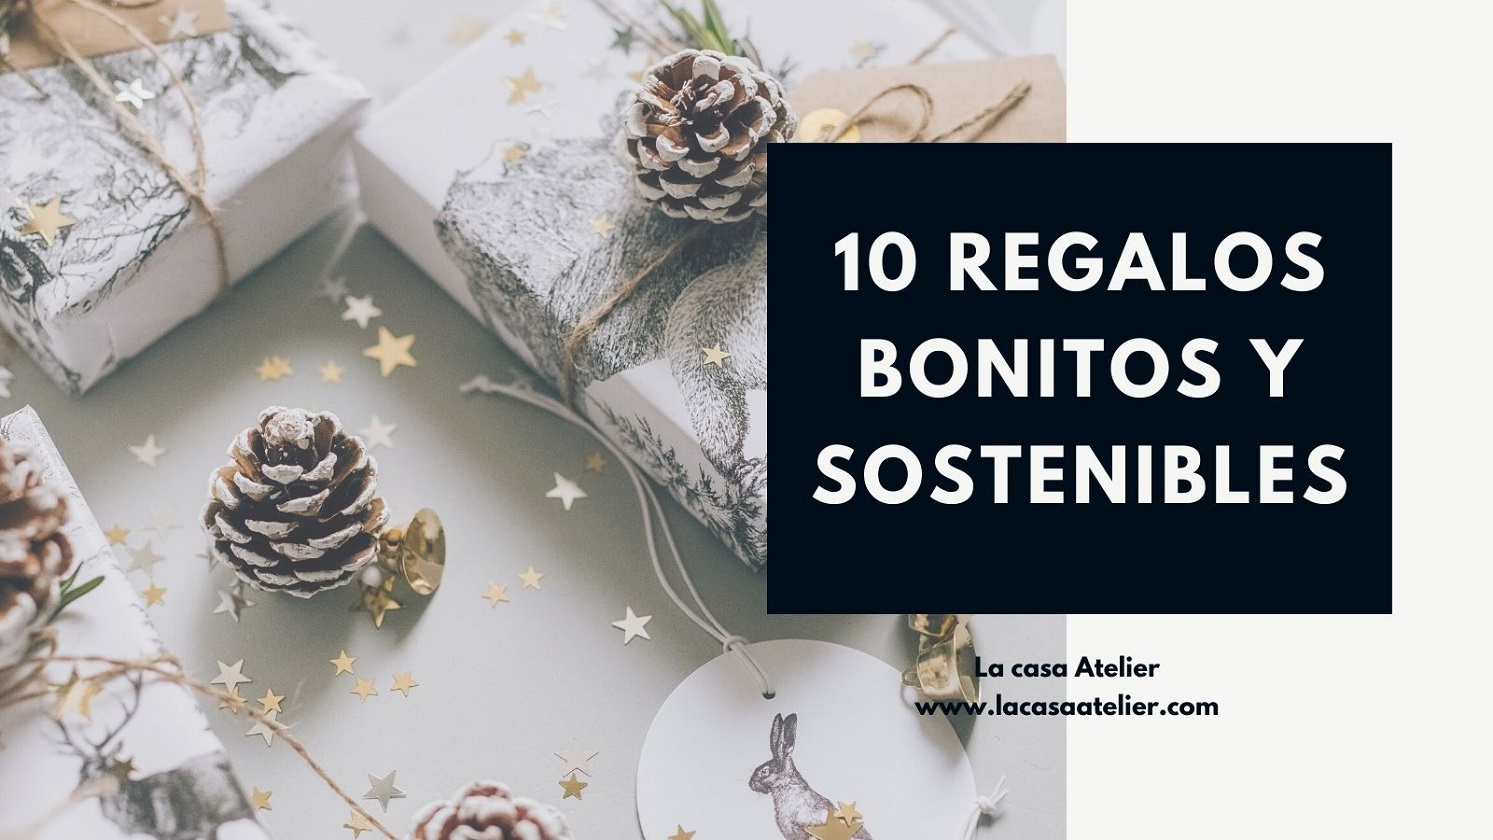 10 IDEAS PARA REGALAR BONITO Y SOSTENIBLE